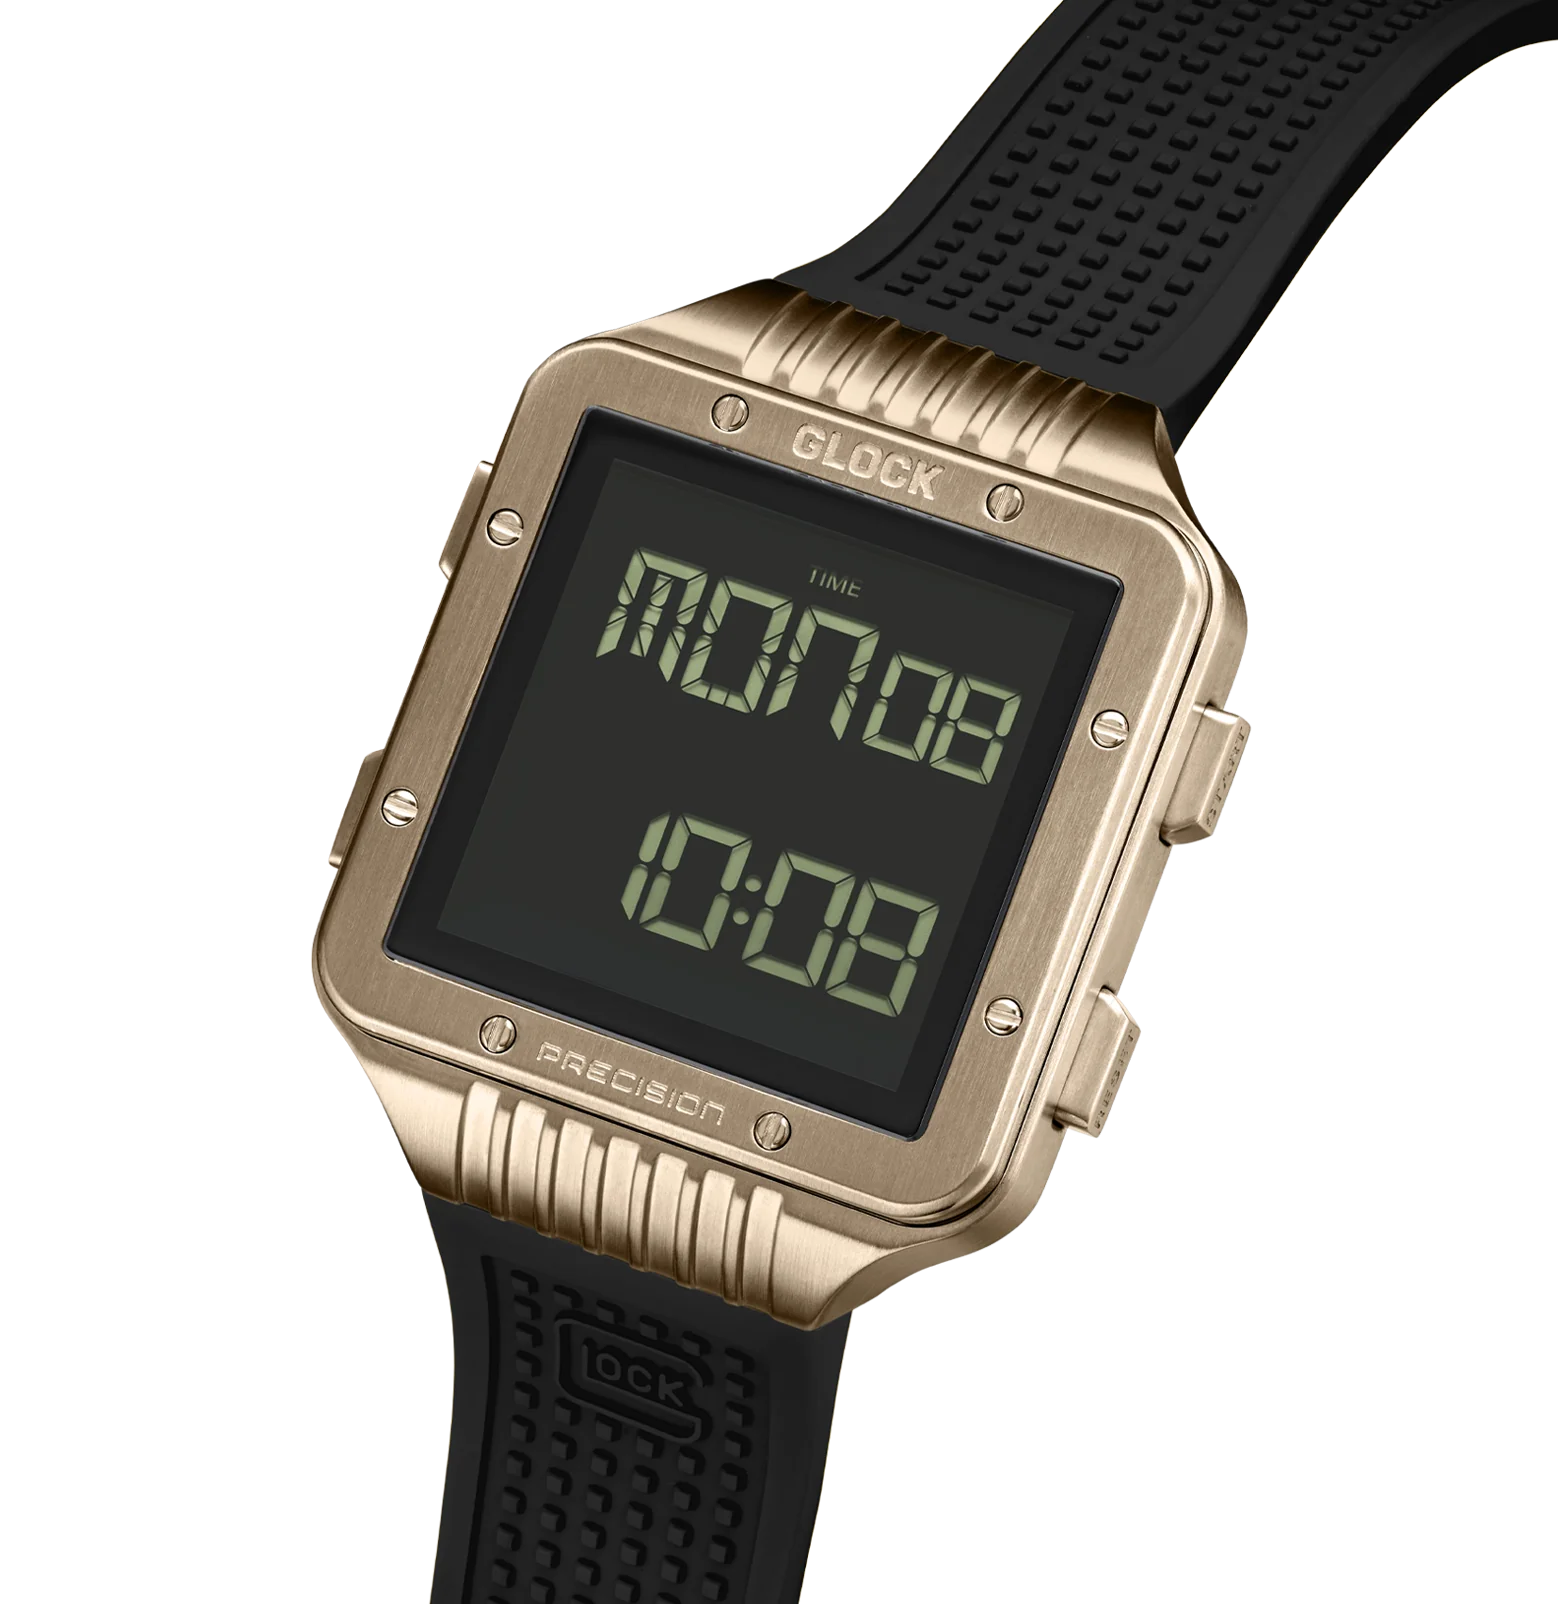 Coyote-tone Stainless Steel Digital Glock Watch